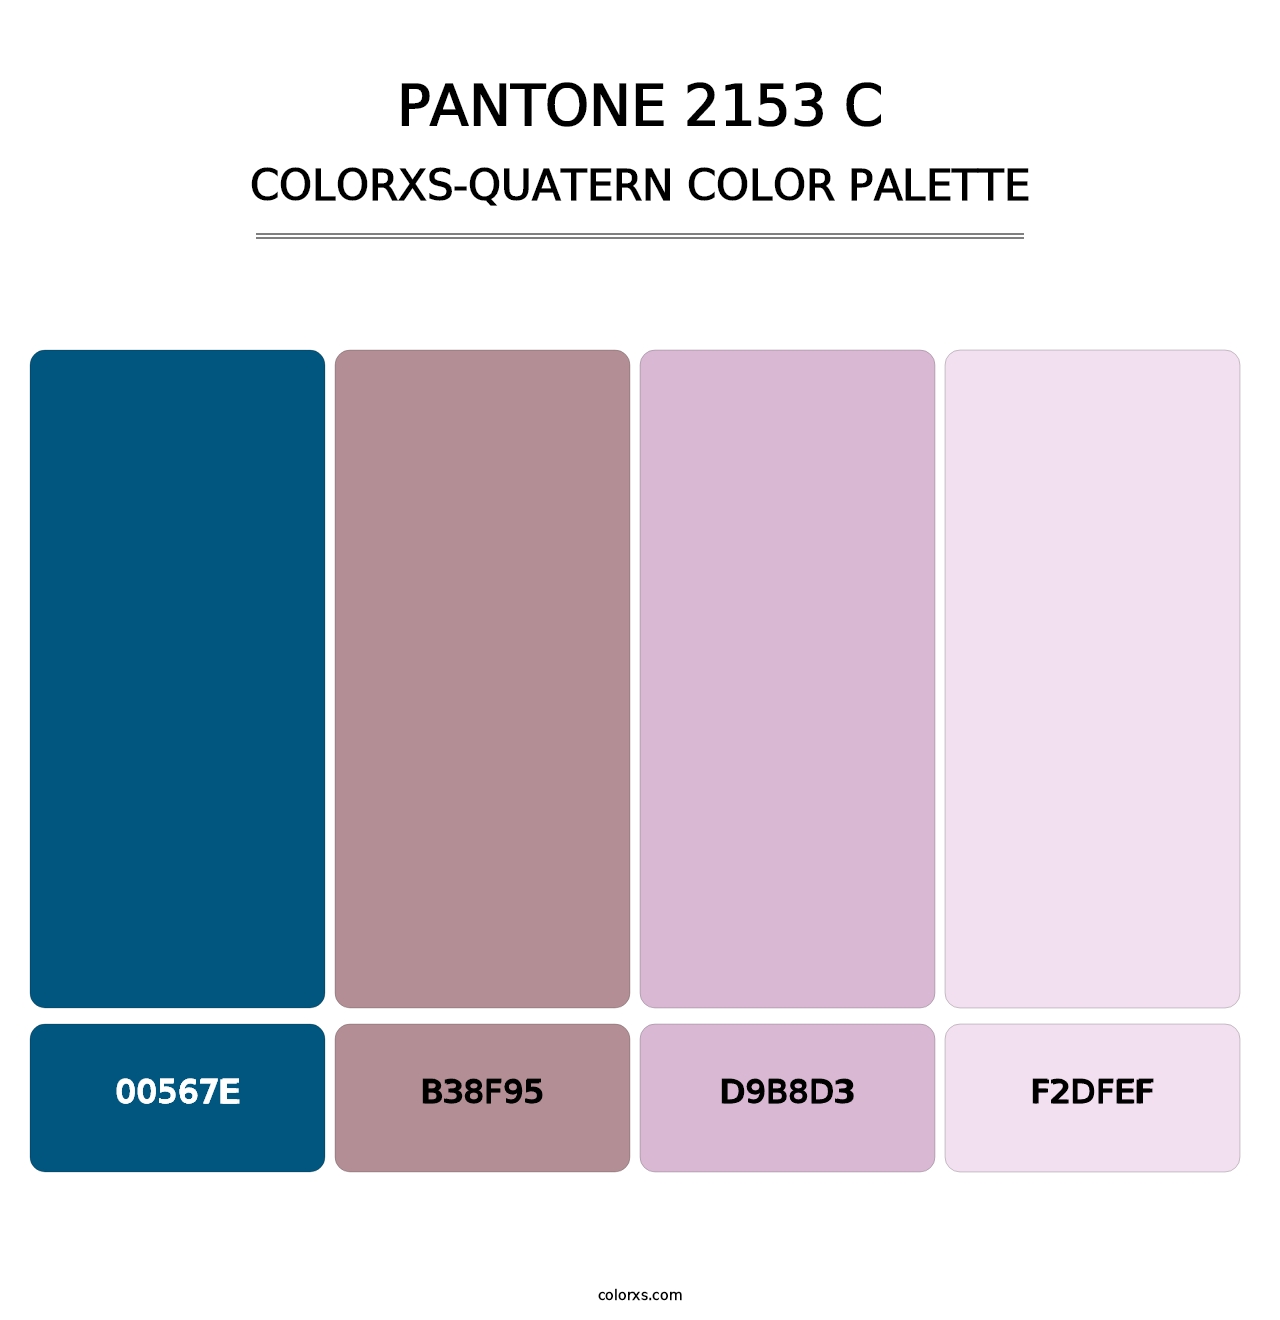 PANTONE 2153 C - Colorxs Quatern Palette